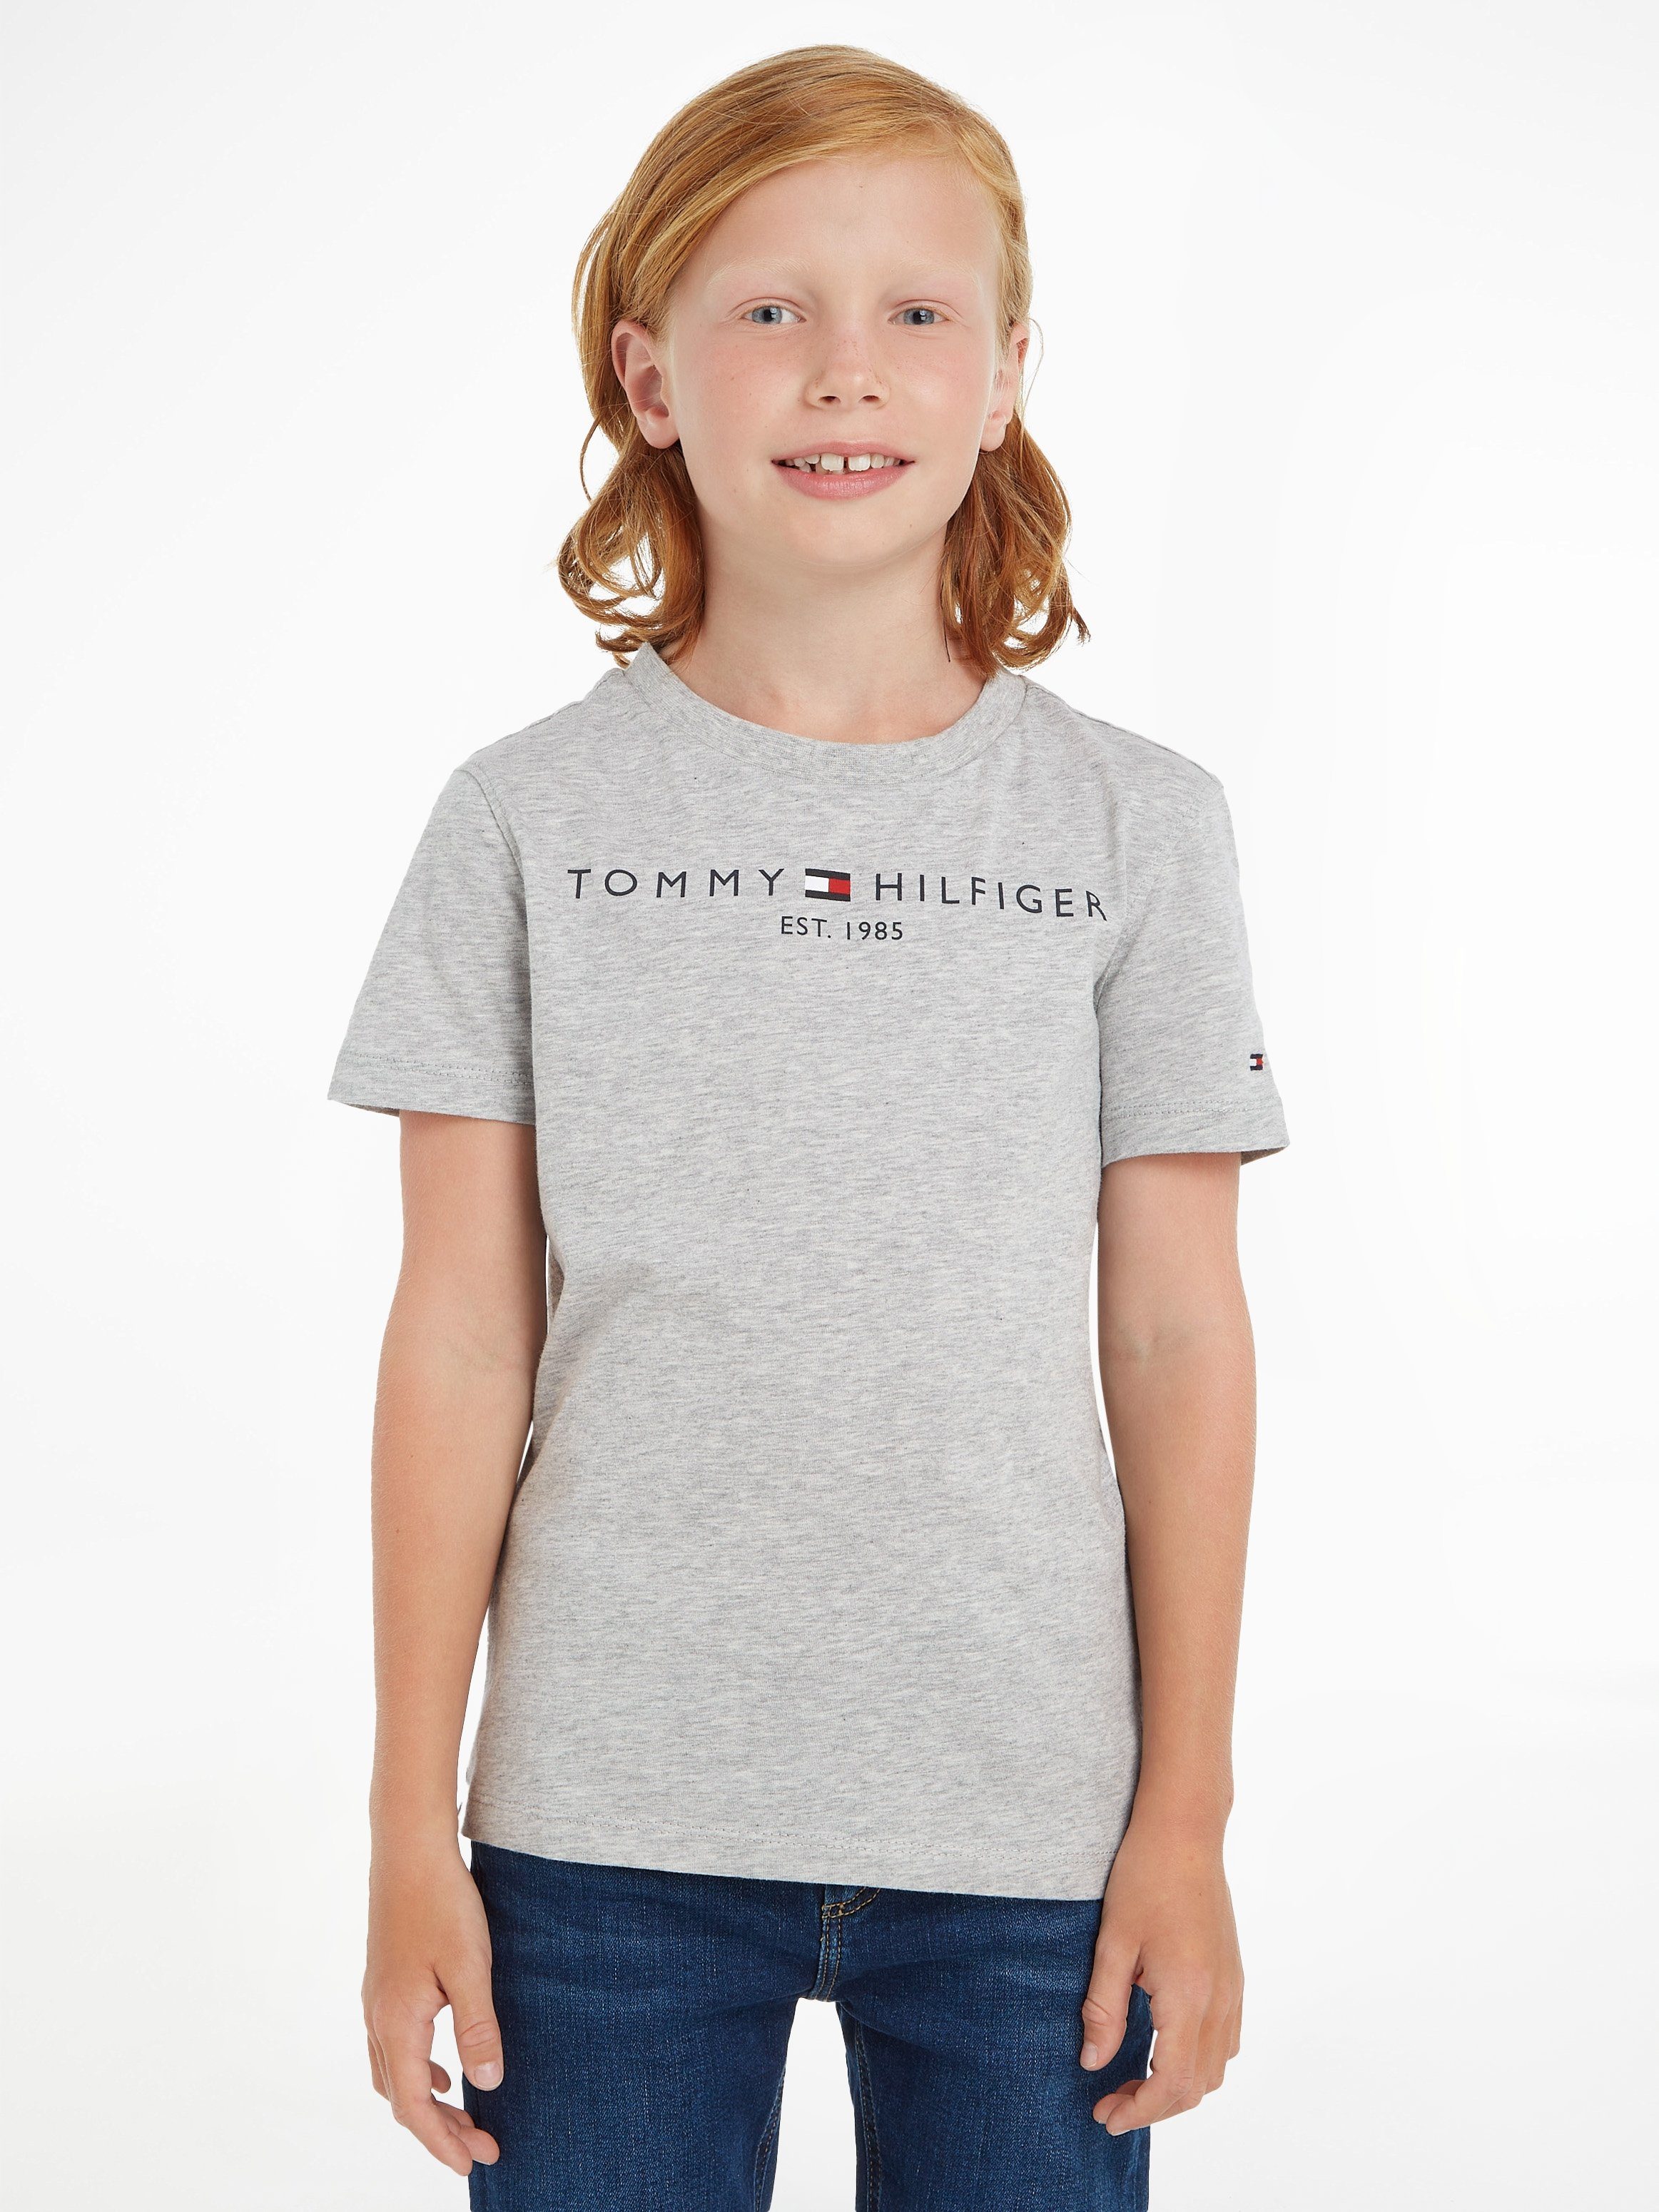 T-Shirt und Kinder Tommy Hilfiger TEE Junior Kids ESSENTIAL Jungen MiniMe,für Mädchen